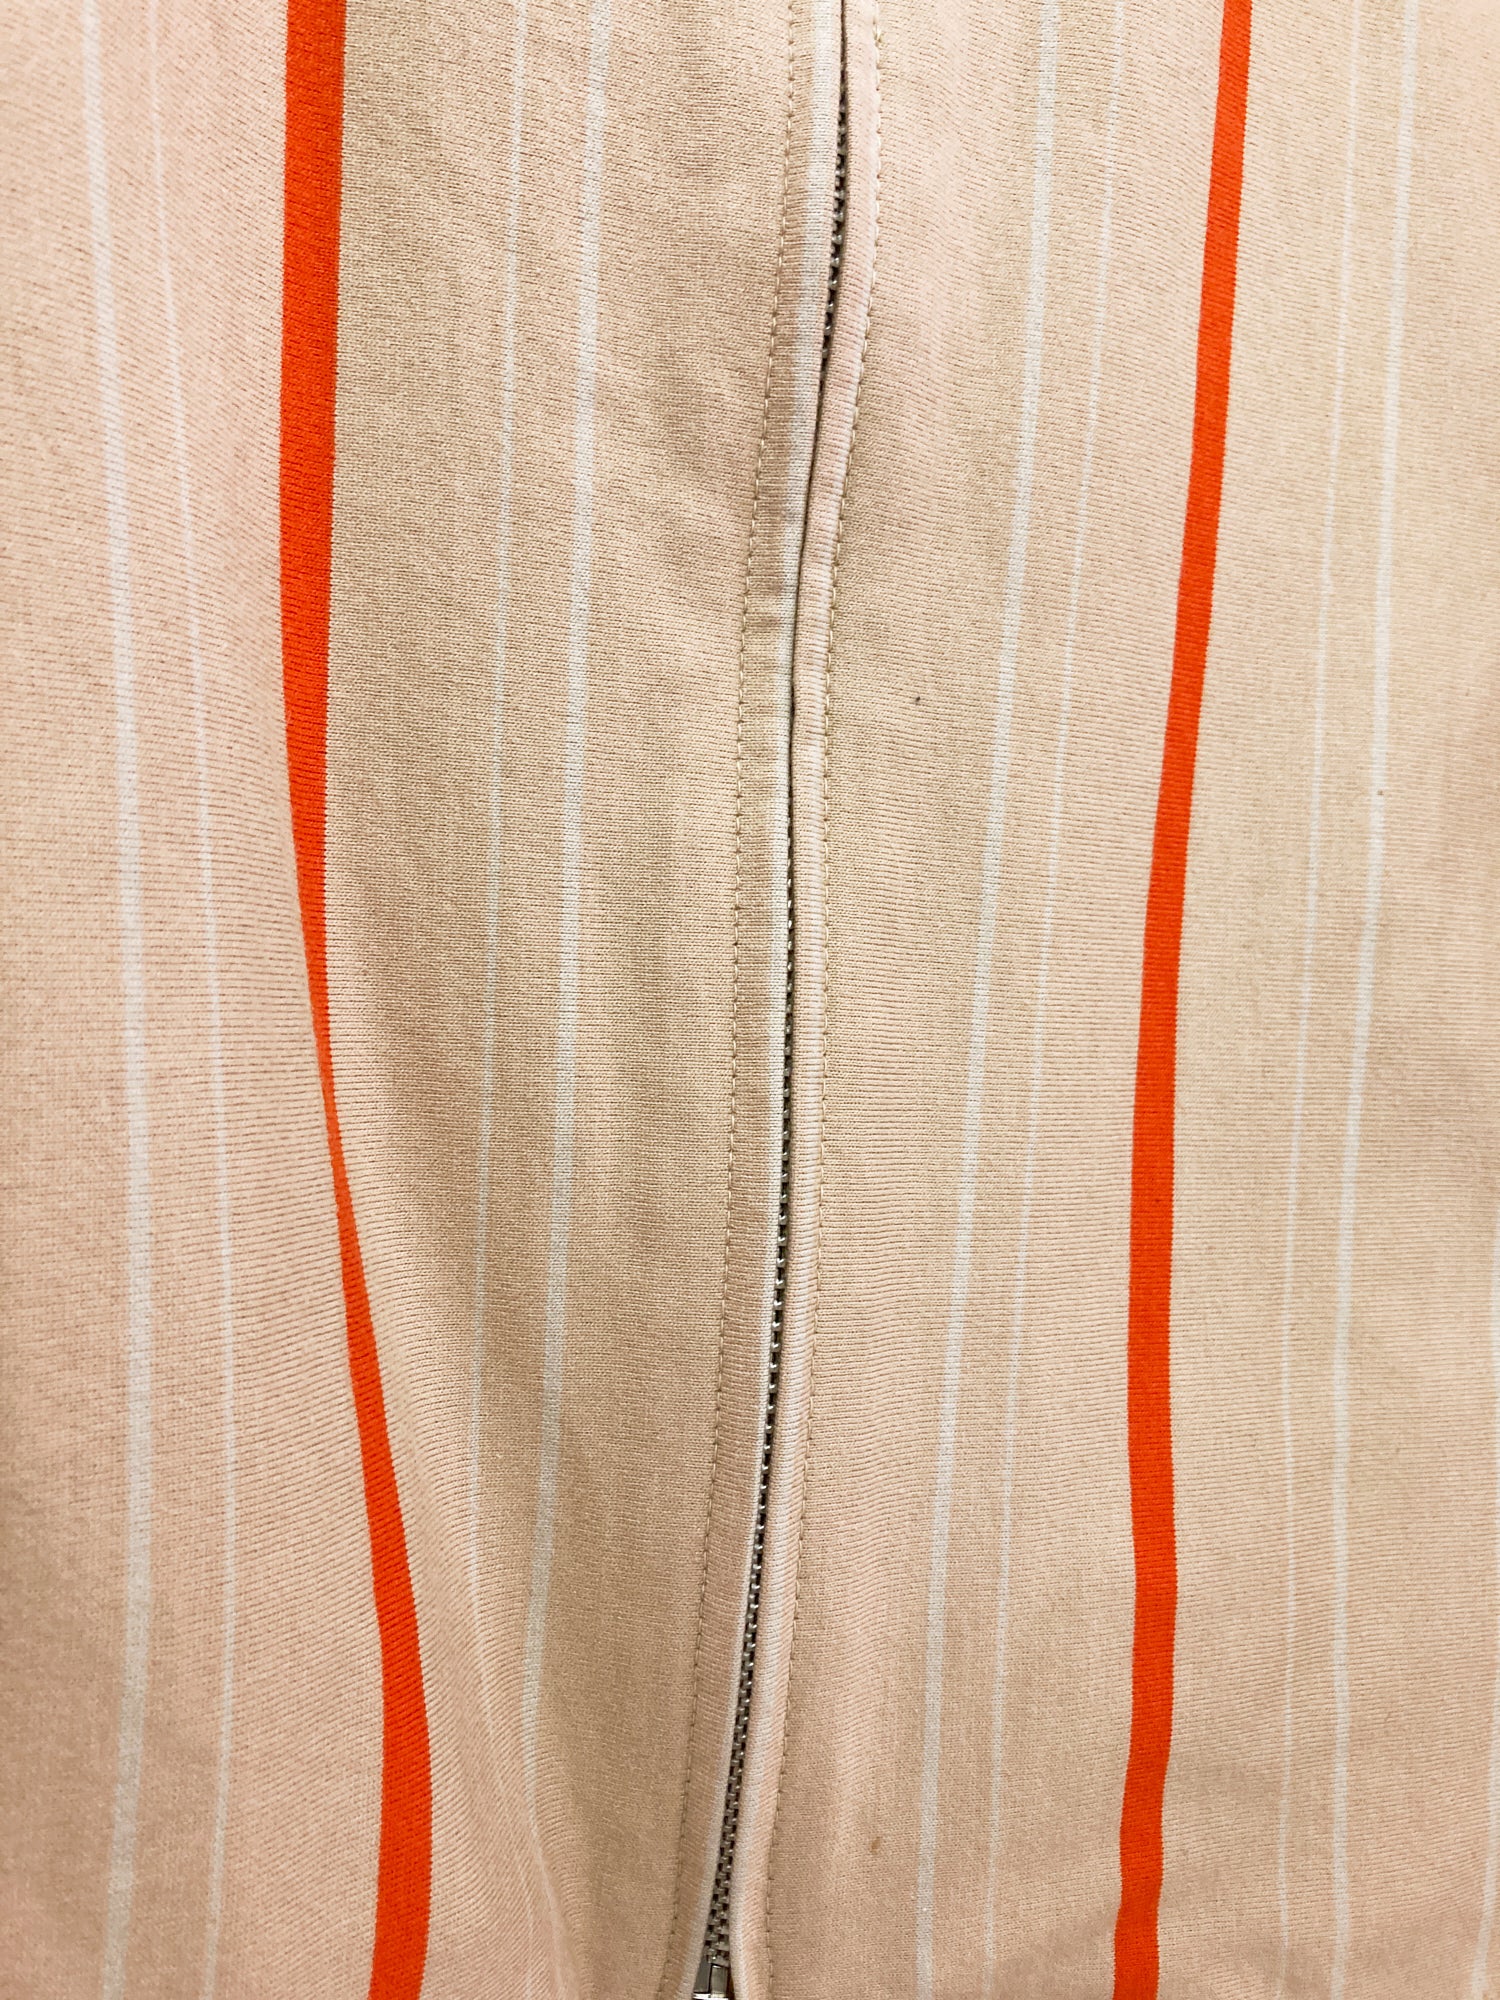 Y's for Men Yohji Yamamoto beige orange stripe jersey knit zip jacket - size 3 M